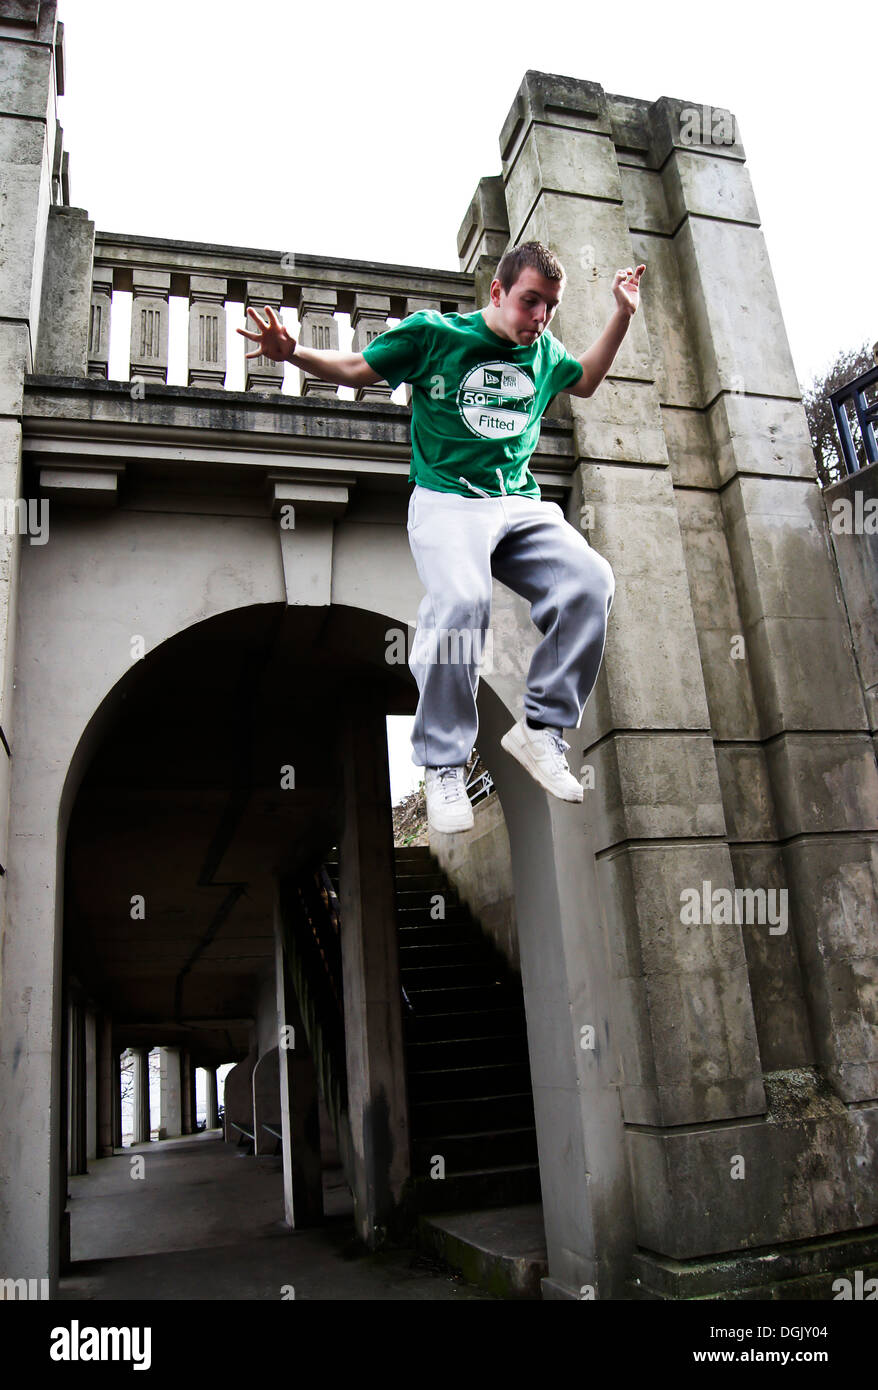 Un athlète parkour sautant d'une structure. Banque D'Images